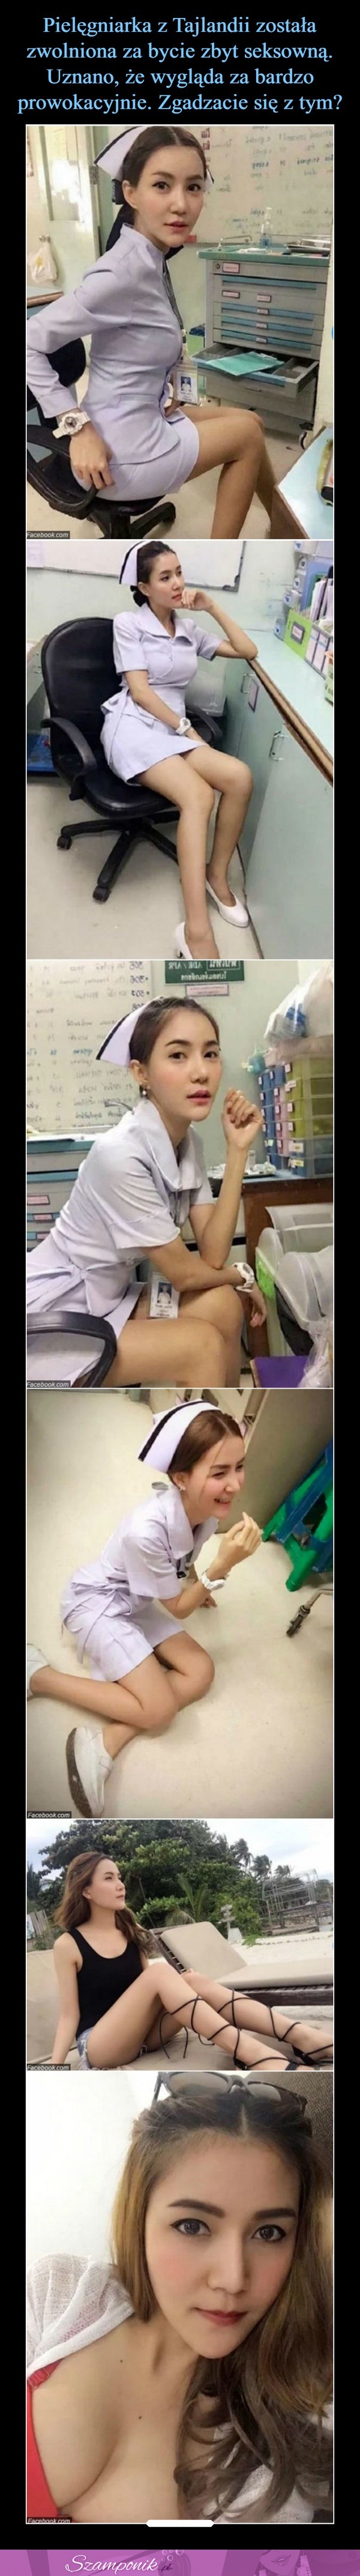 Pielęgniarka z Tajlandii została zwolniona za bycie zbyt seksowną!